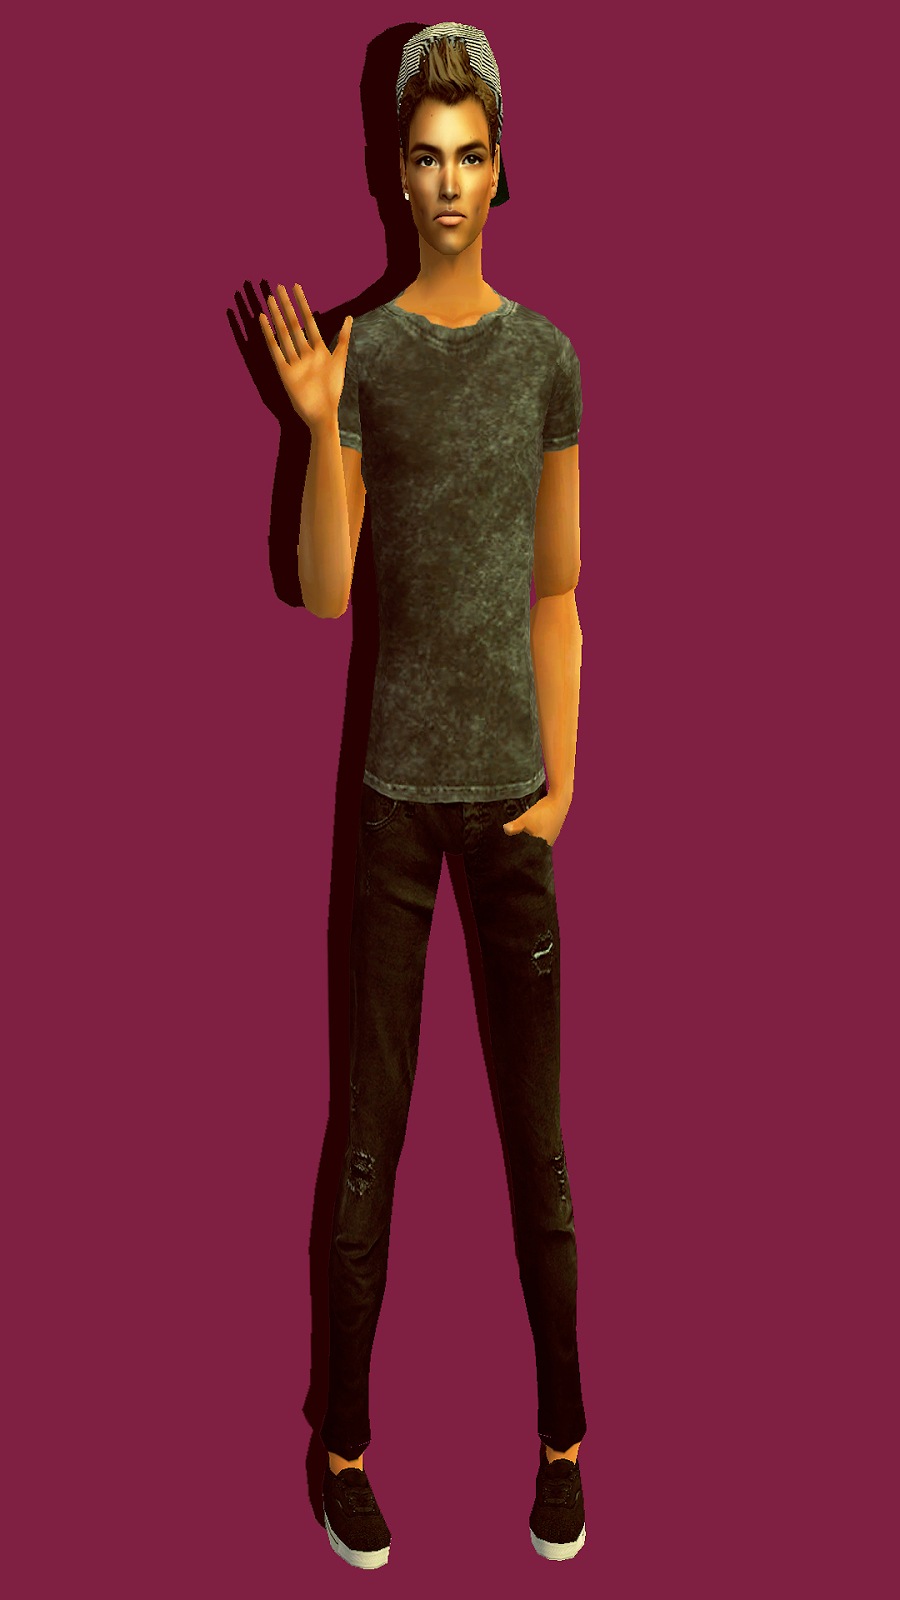 sims -  The Sims 2. Мужская одежда: повседневная. - Страница 22 2a